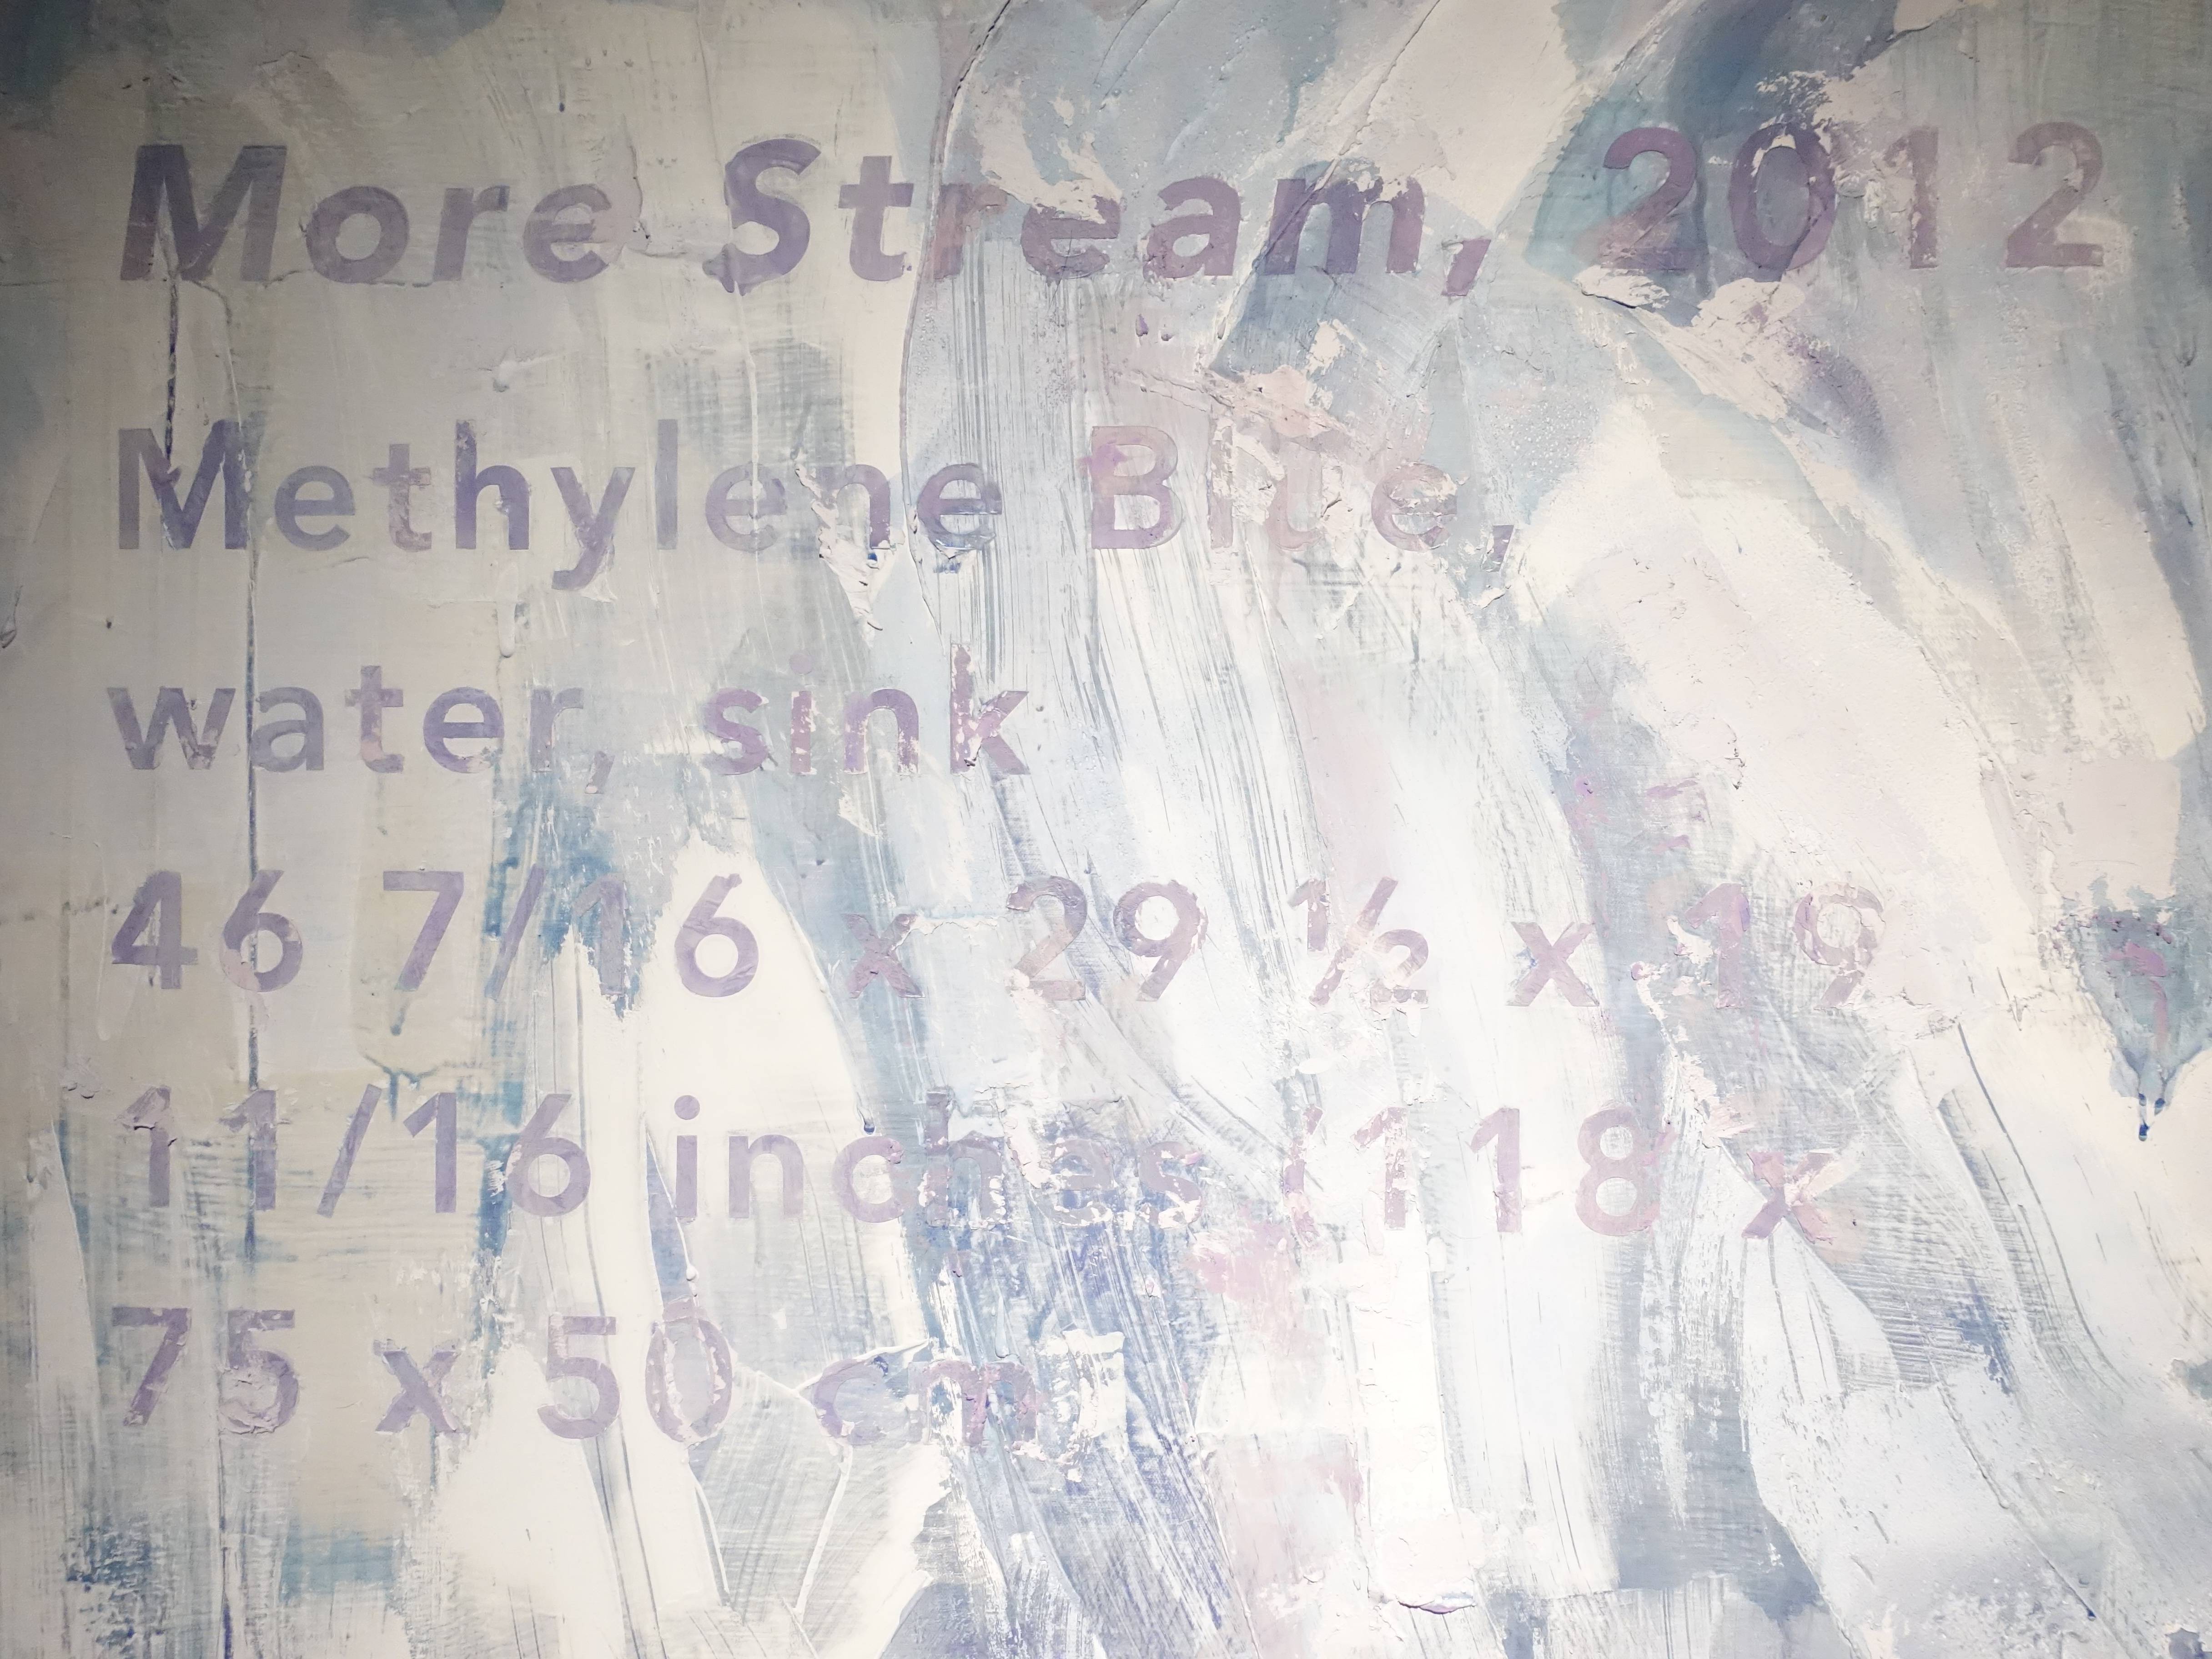 羅智信，《More Stream 》細節，91 x 116 cm，畫布、亞甲藍做成的顏料，2019。